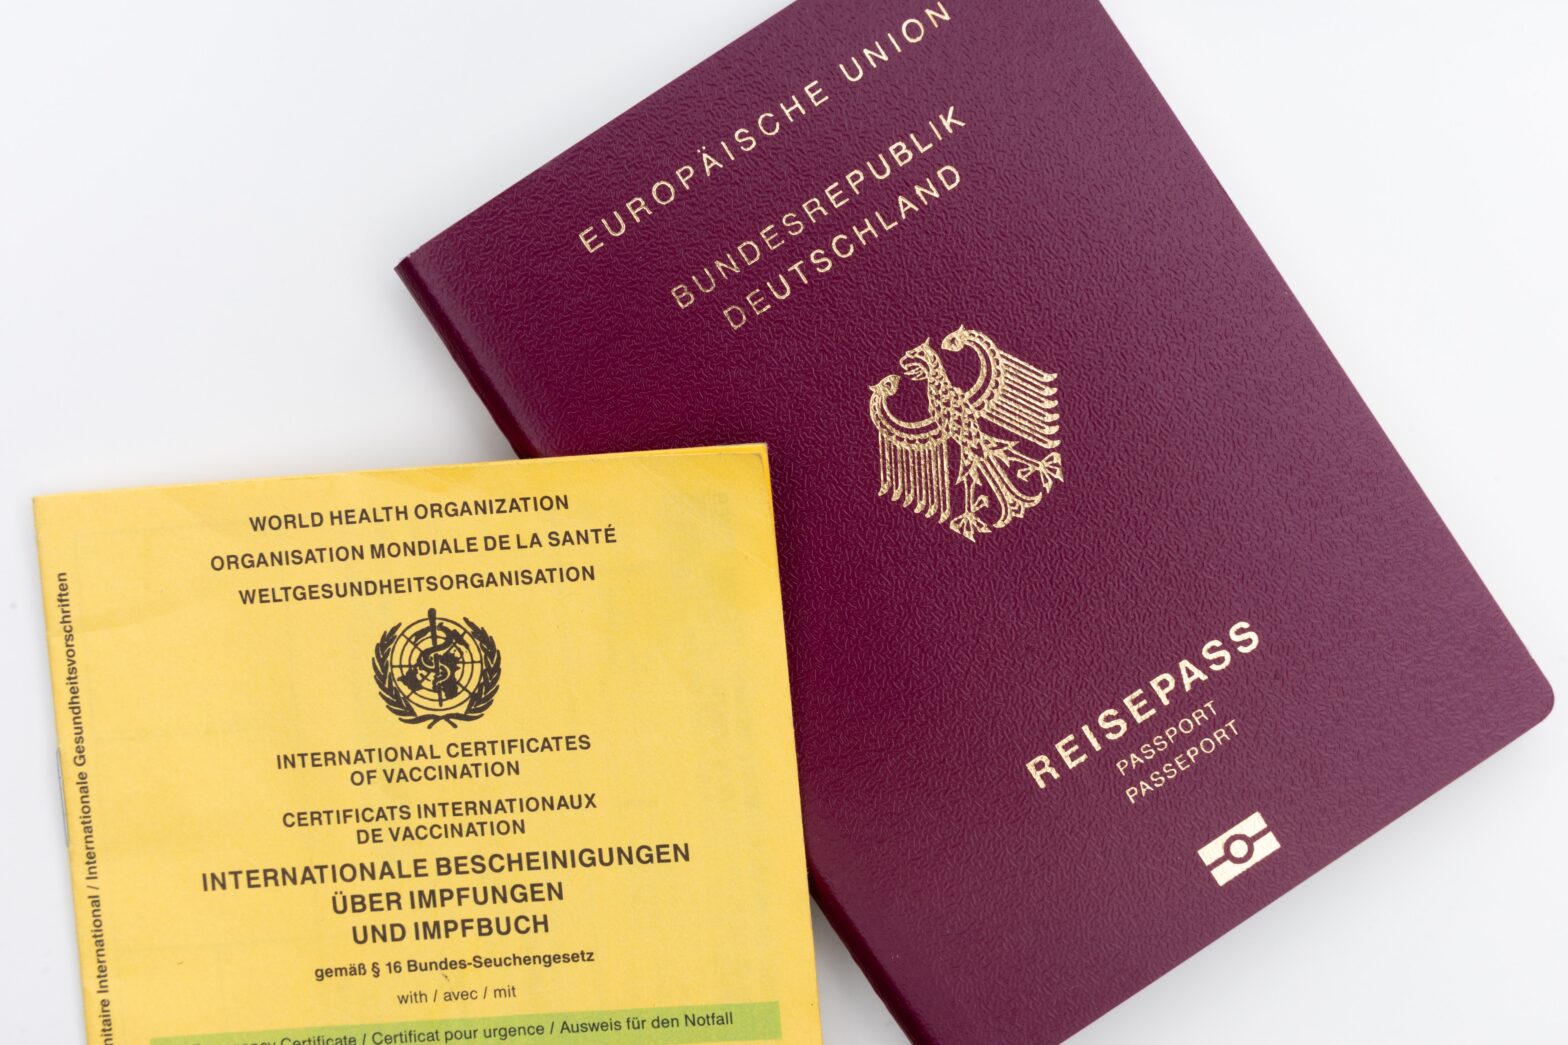 passports